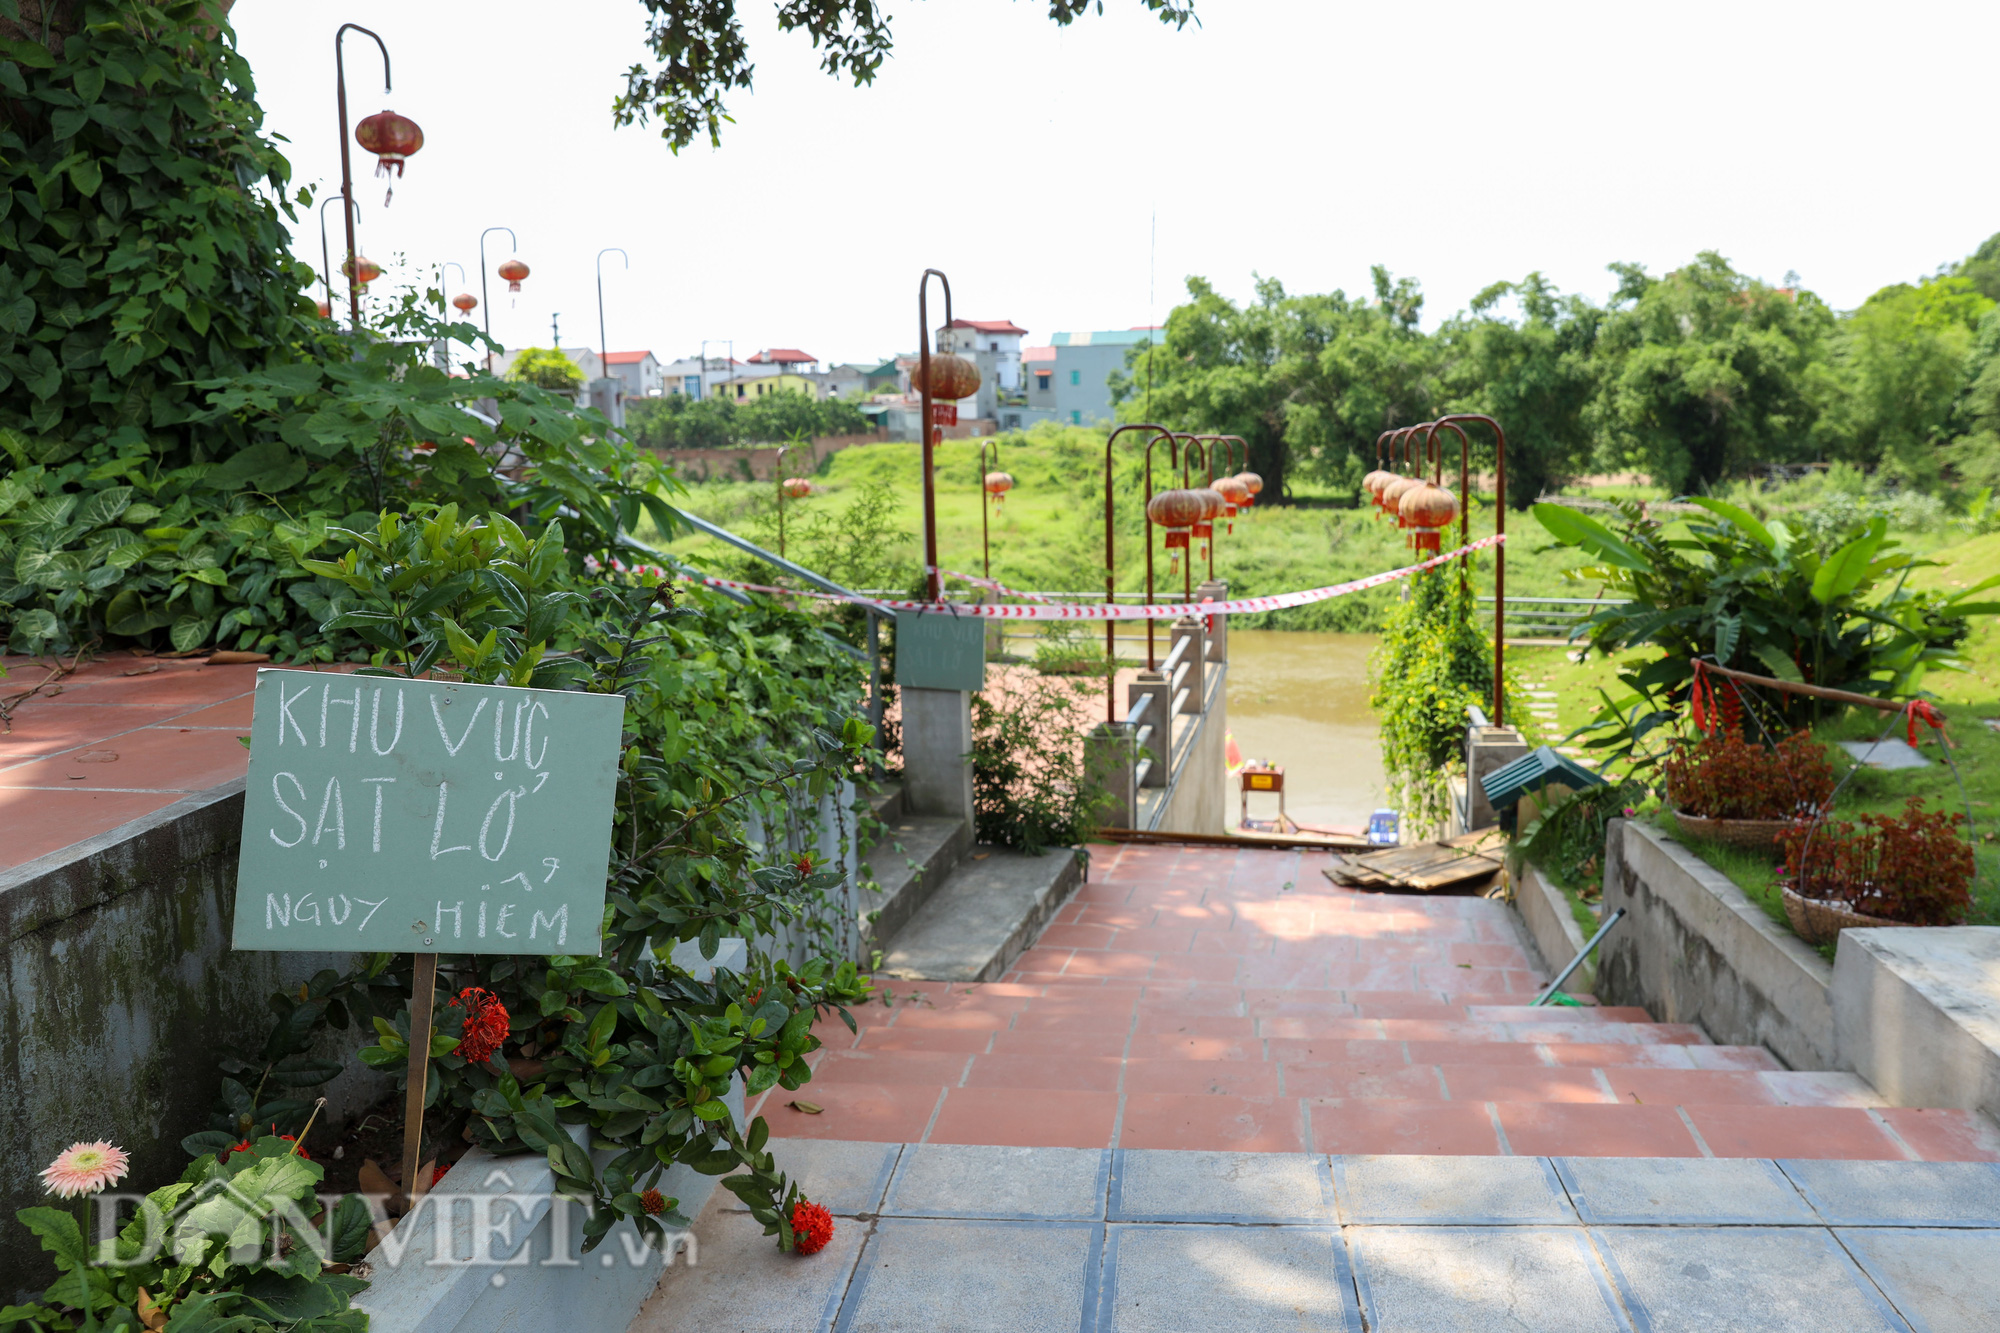 Đền Ba Voi ở Hà Nội bị đóng cửa vì sạt lở bờ sông - Ảnh 4.